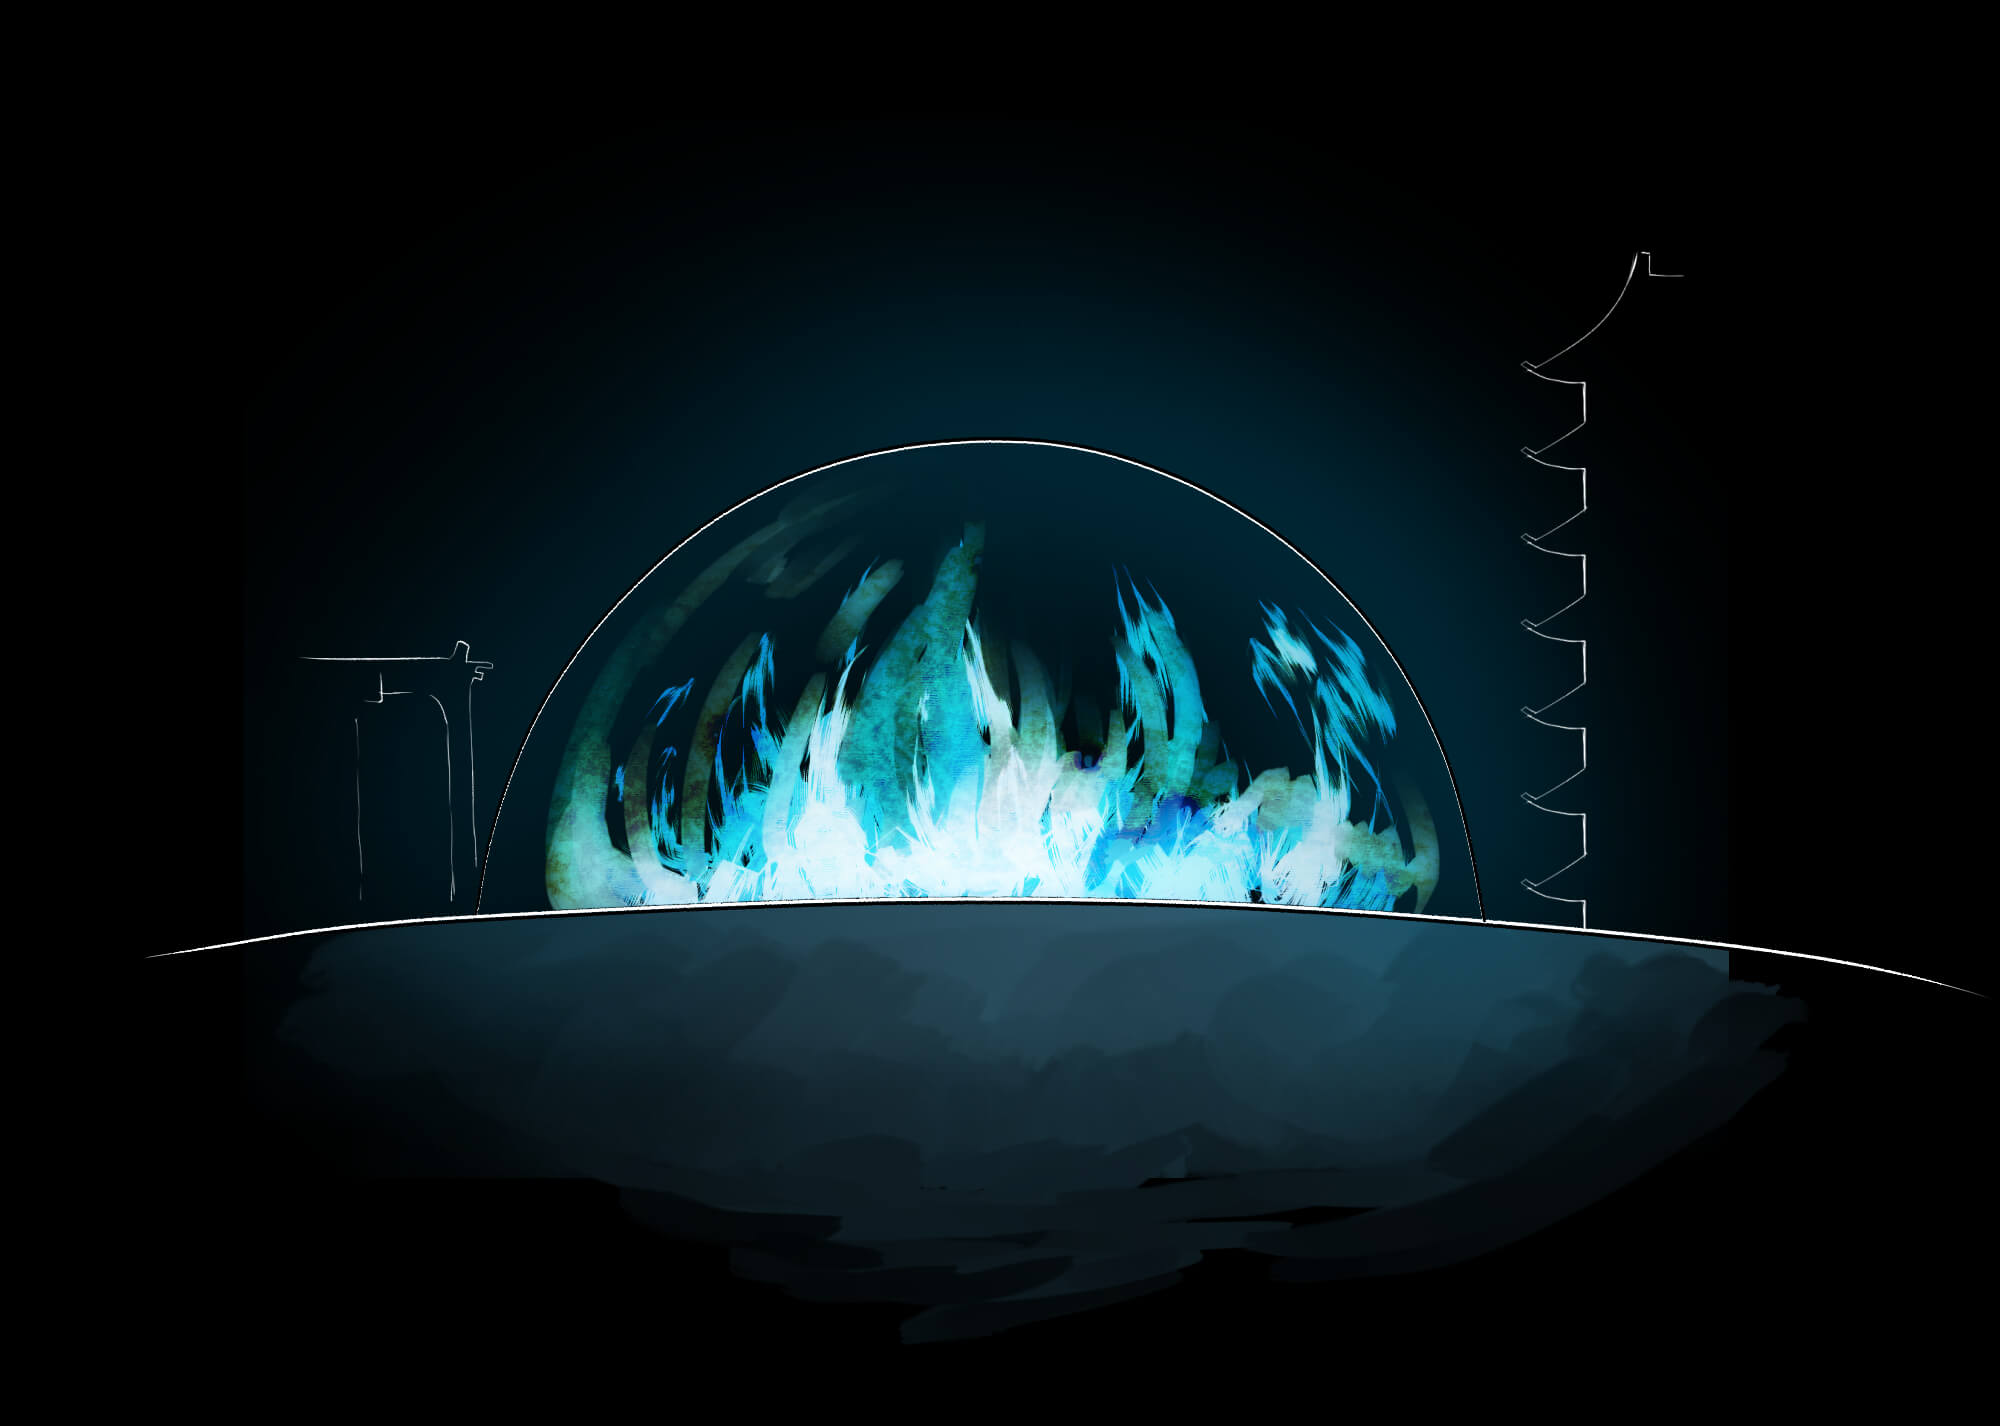 挿絵：真っ暗な地獄に透明なドームがある。ドームの中には、青く明るい炎が燃え盛っている。